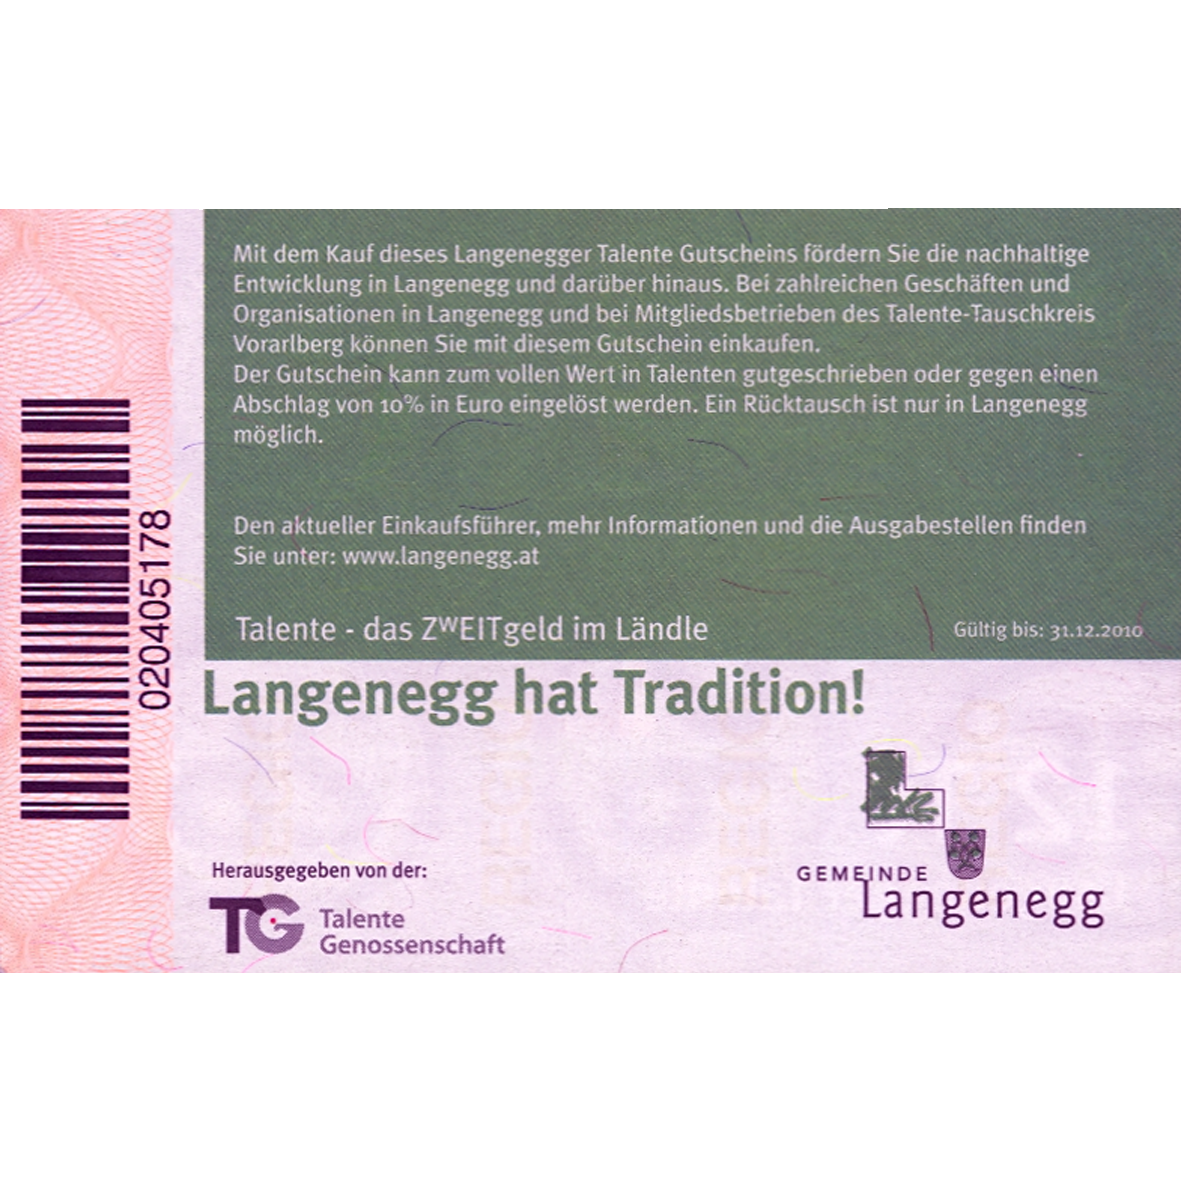 Österreich, Gemeinde Langenegg, Talente Geossenschaft, 12 Langenegger Talente, gültig bis 31.12.2010 (reverse)